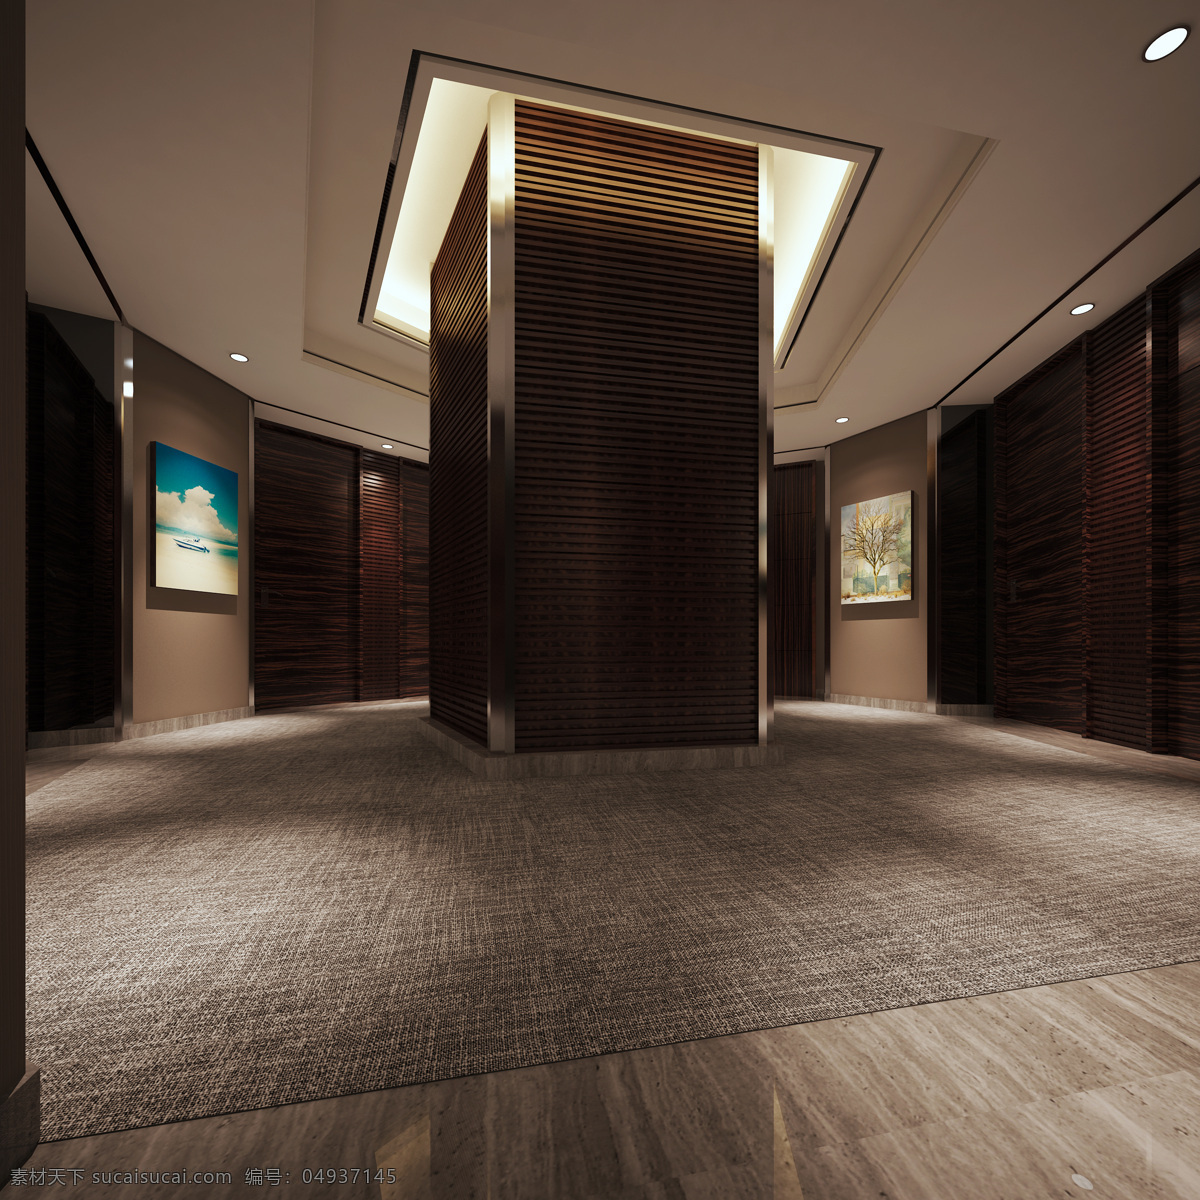 现代 时尚 酒店 走廊 木制 柱子 室内装修 效果图 工装装修 深色地毯 蓝色挂画 酒店走廊